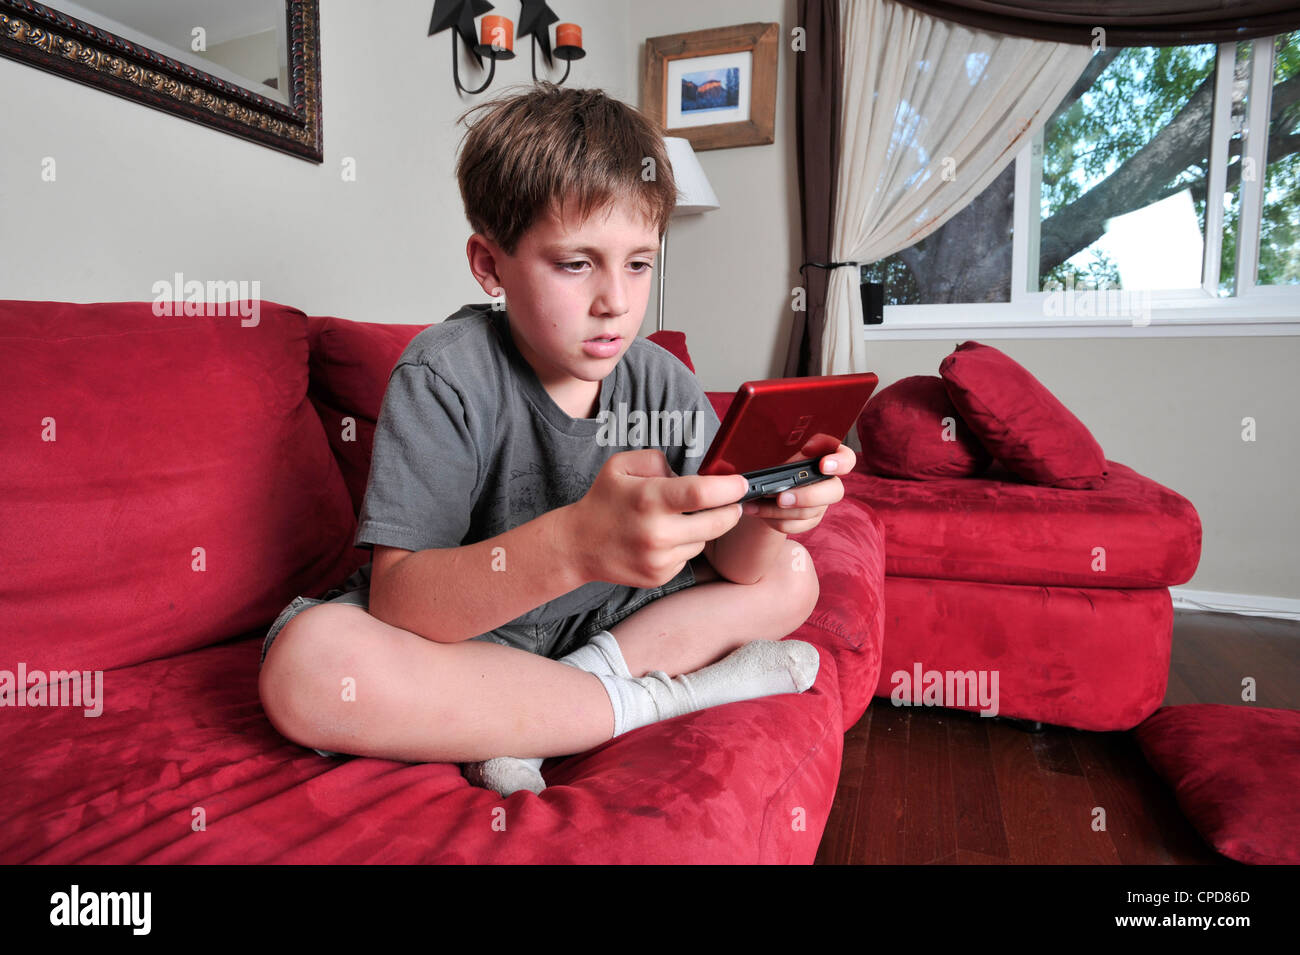 Niño jugando con un Nintendo DS Foto de stock